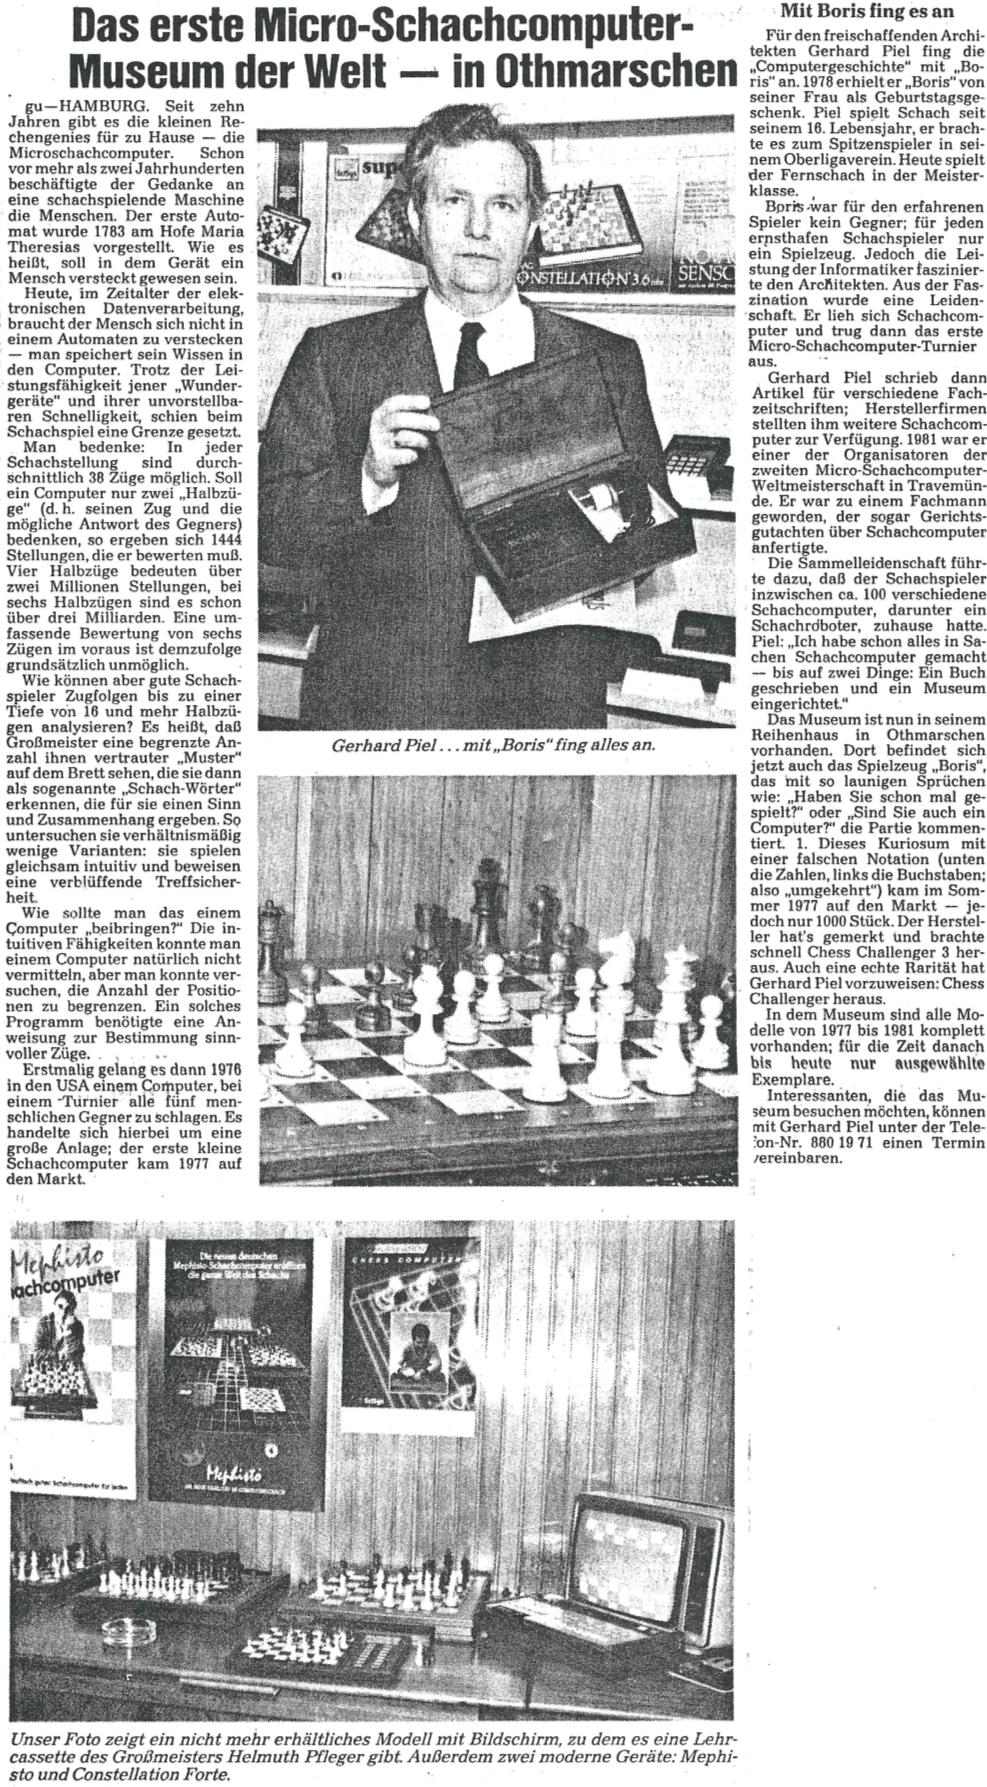 Das erste Micro-Schachcomputer-Museum der Welt Othmarschen (Quelle: